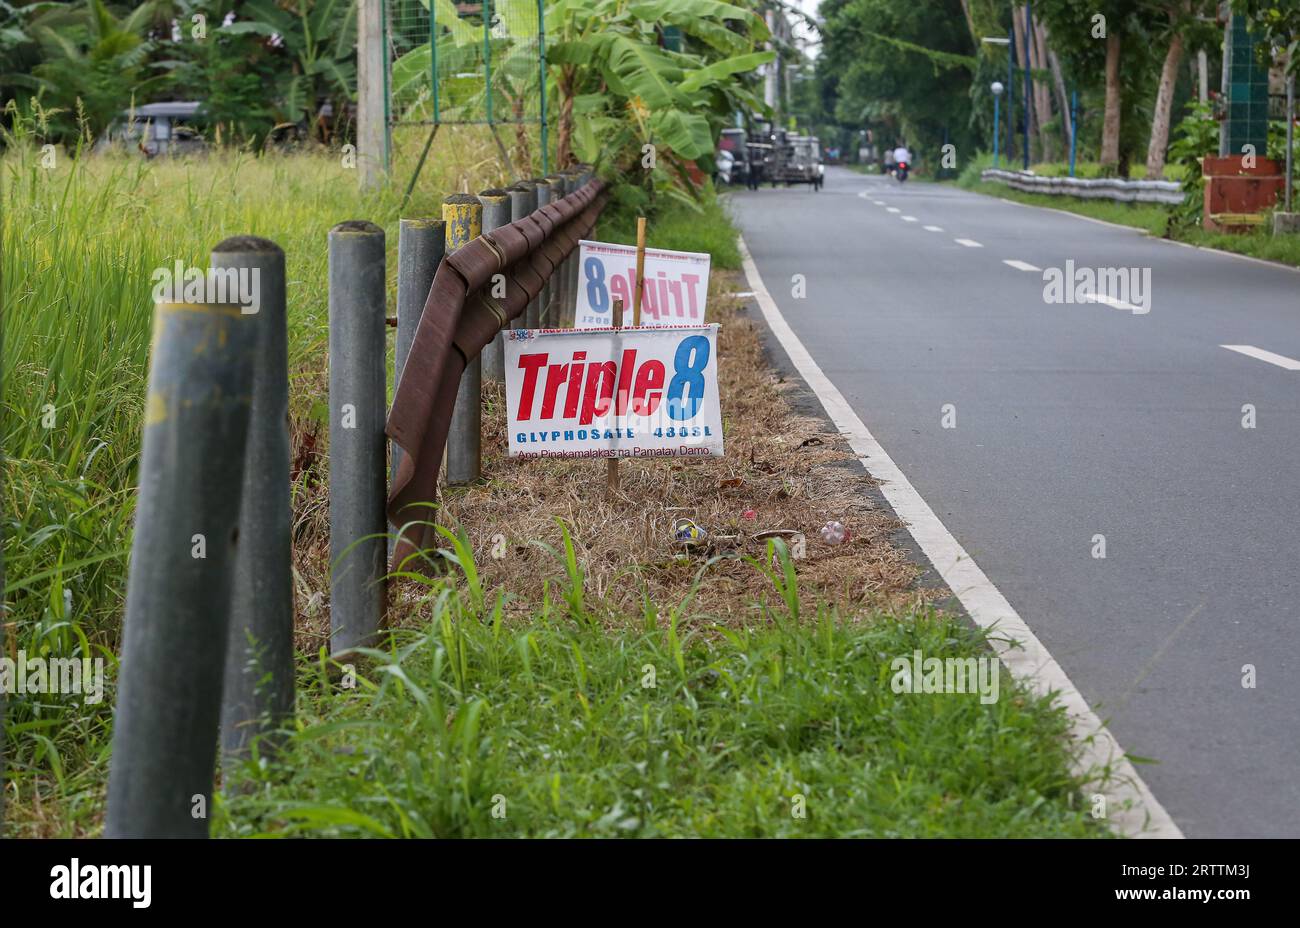 Panneau publicitaire pour l'herbicide glyphosate Triple 8 480SL (Tag Chem) utilisé dans les rizières voisines, démarcation claire de l'efficacité des désherbants, Philippines Banque D'Images